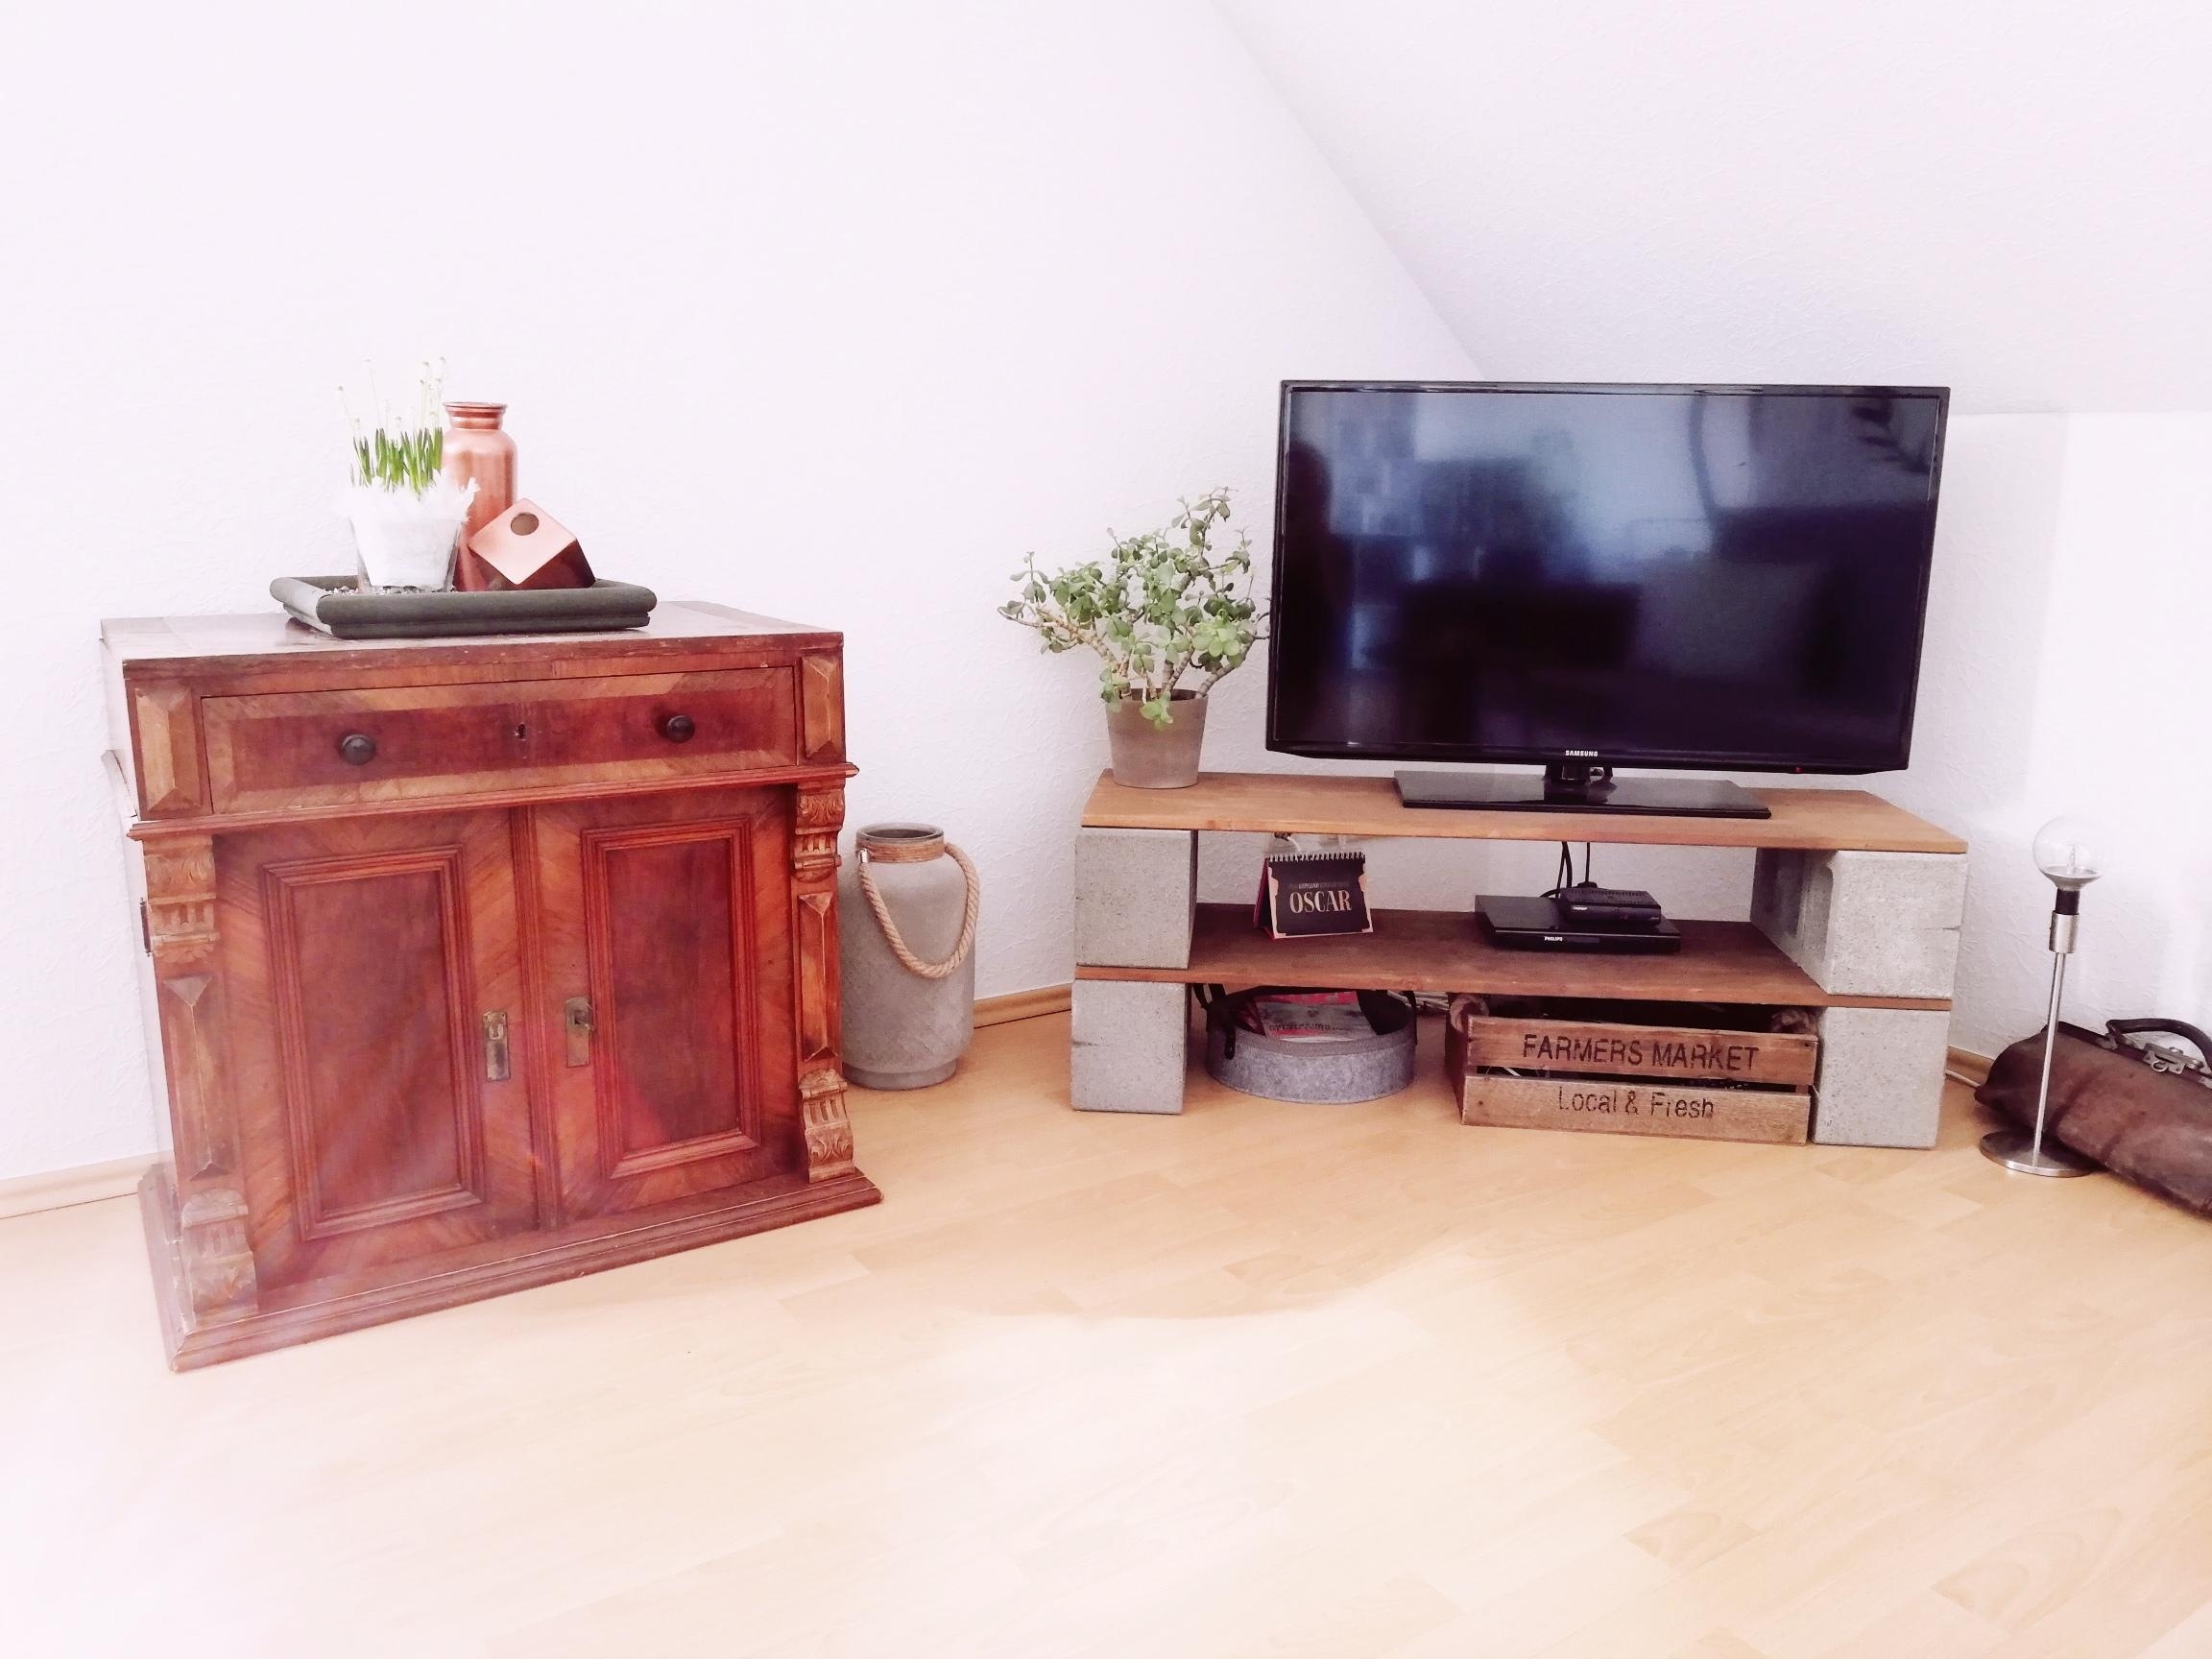 TV-Board in DIY Manier verliebt sich in antikes Kommodenerbstück
#livingchallenge #wohnzimmergestaltung